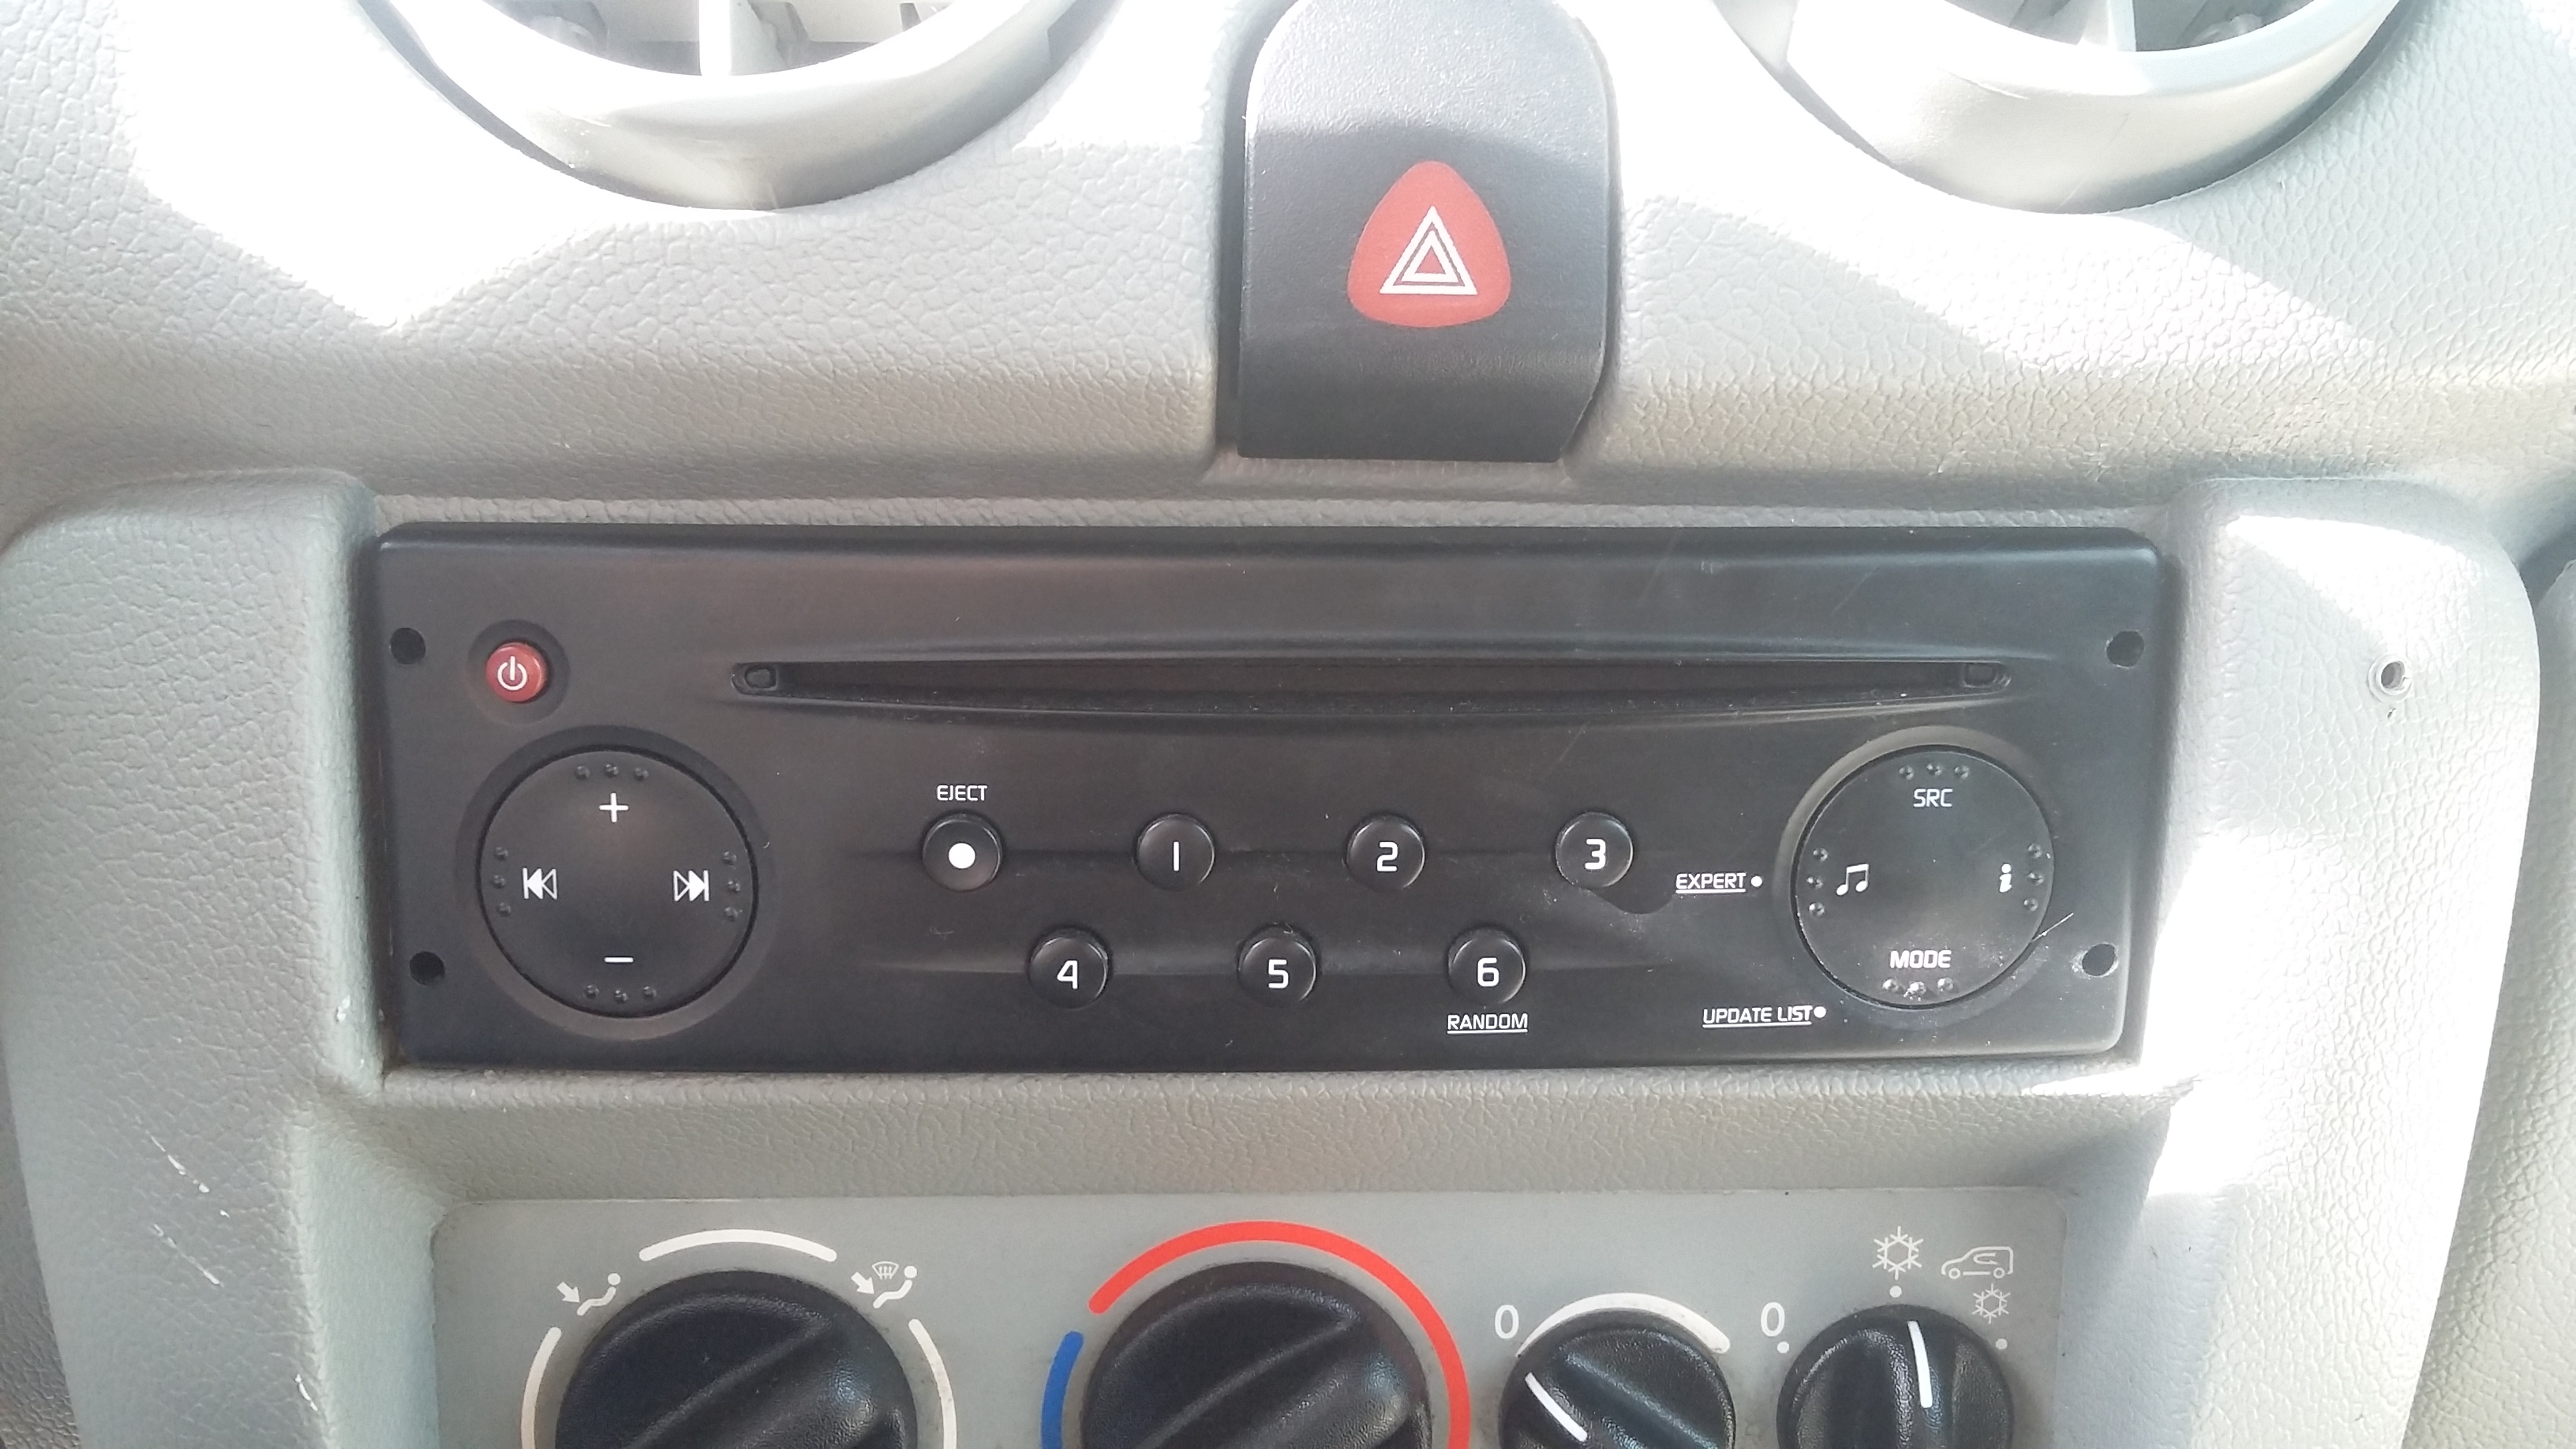 Radio von Renault Kangoo funktioniert nicht! Was könnte